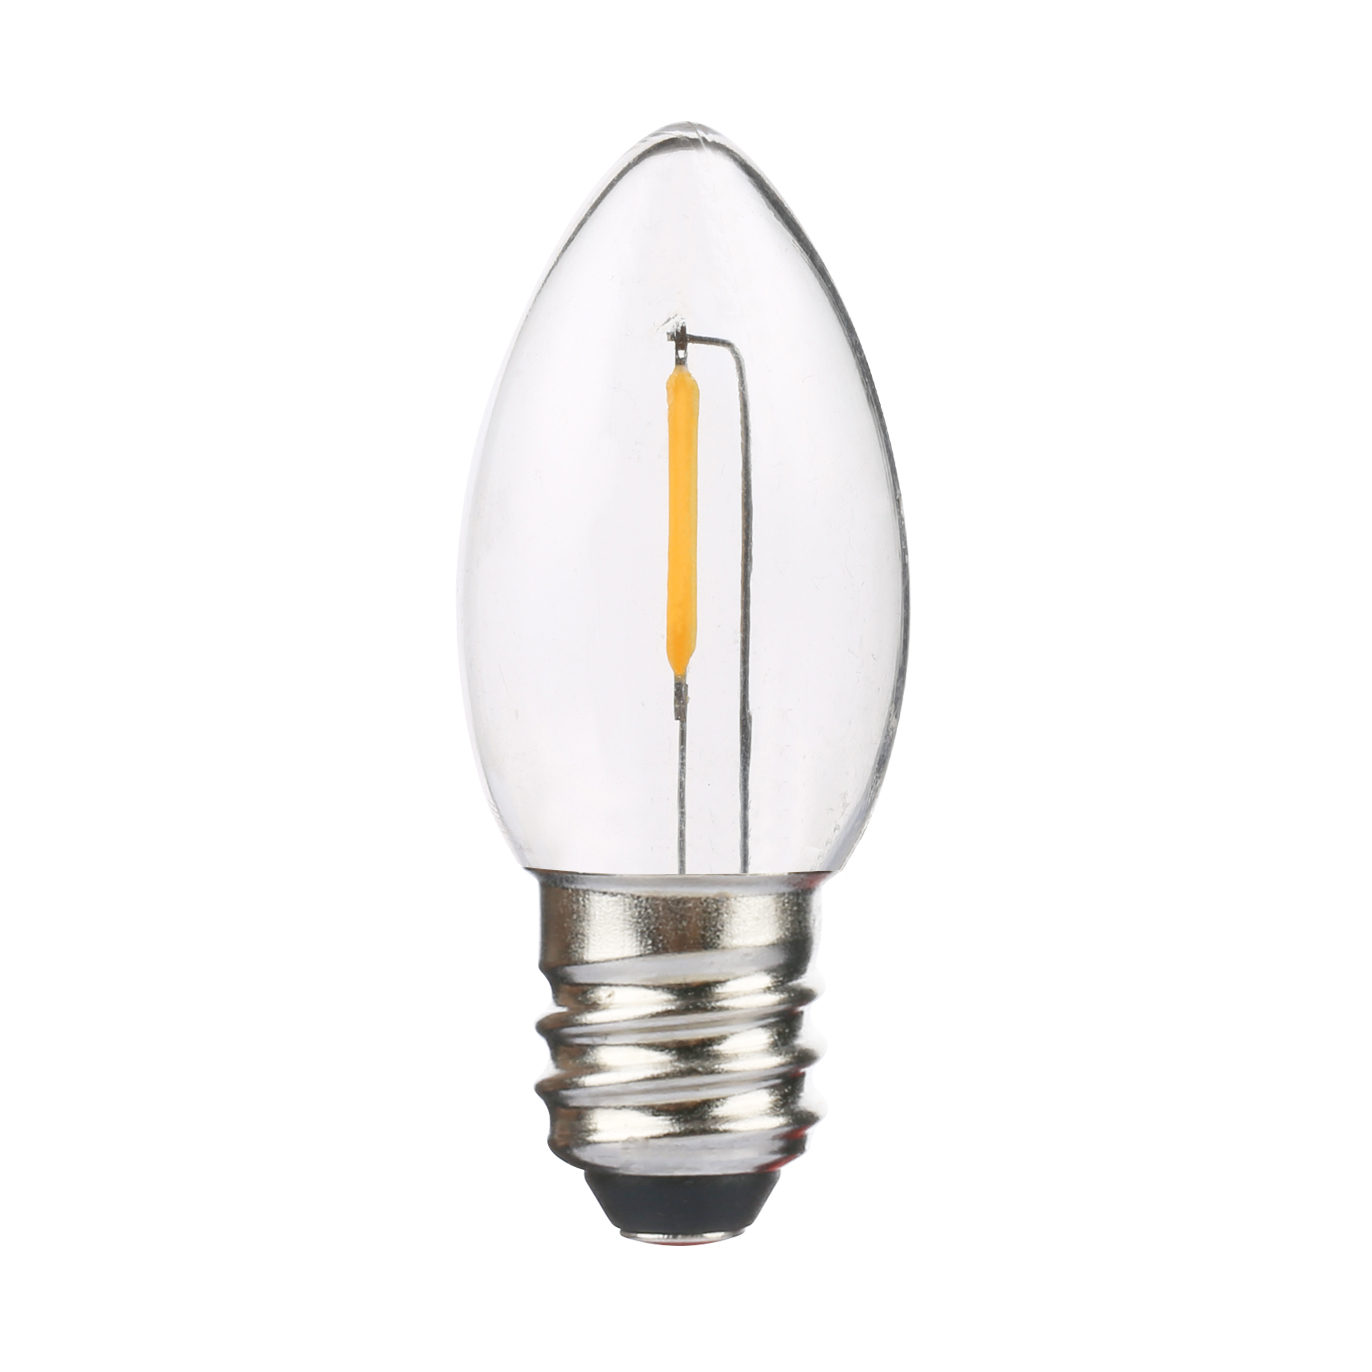 UL Listed E17 C9 LED bulbs